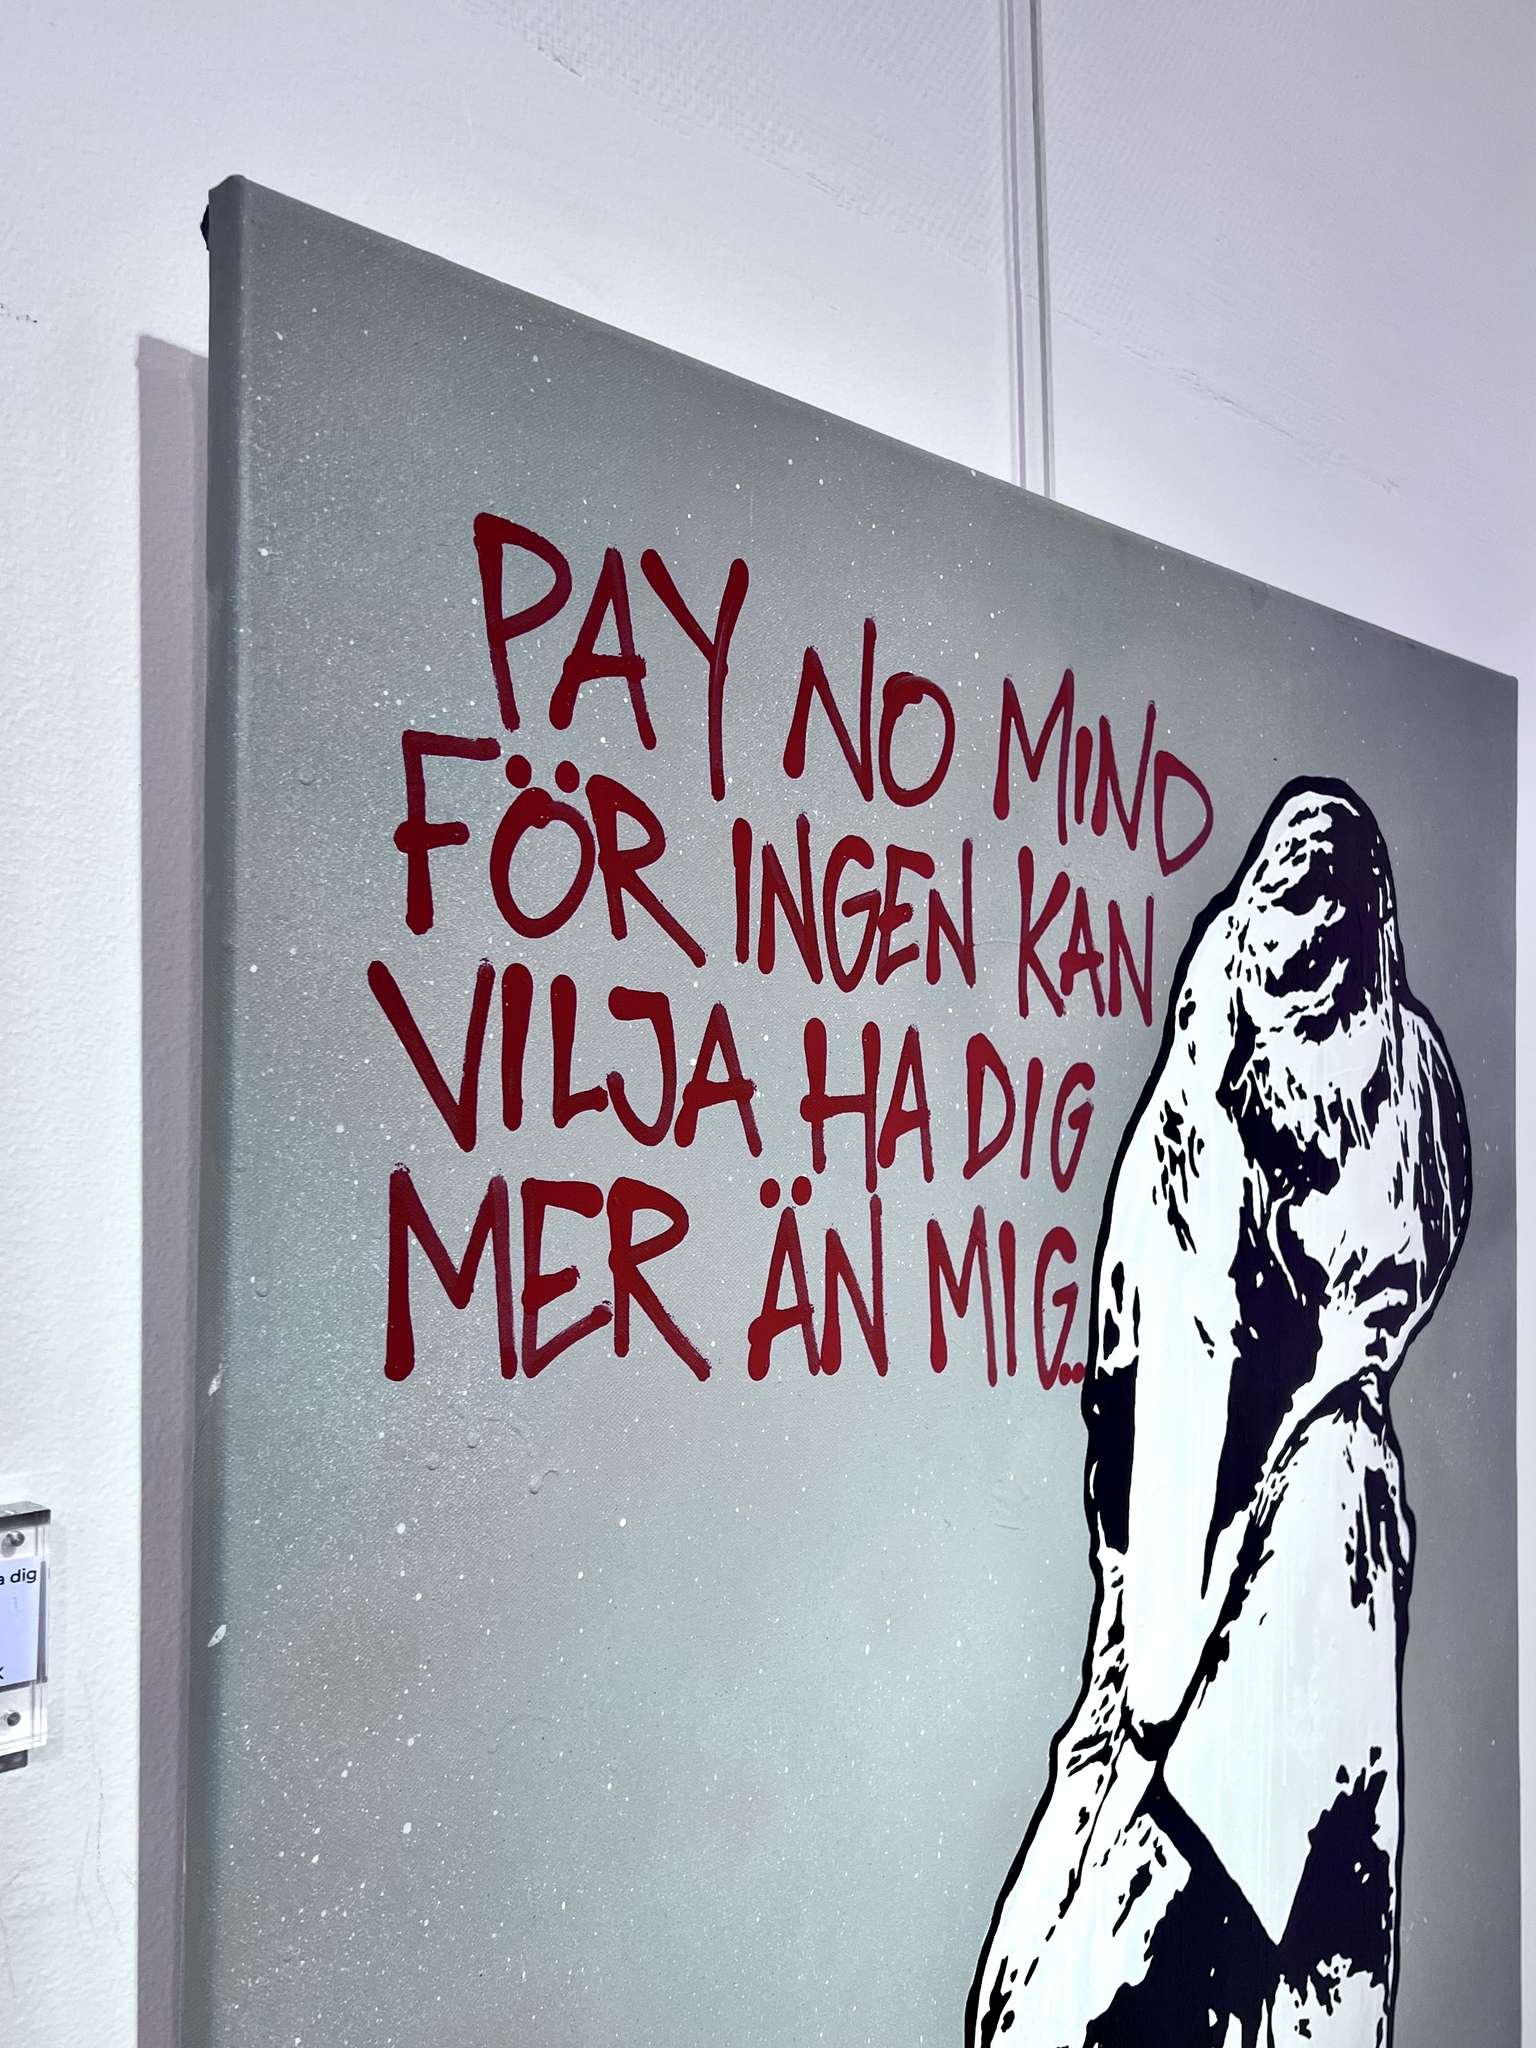 18.	"Pay no mind för ingen kan vilja ha dig mer än mig” av Hellstrom Street Art. 90x115 cm